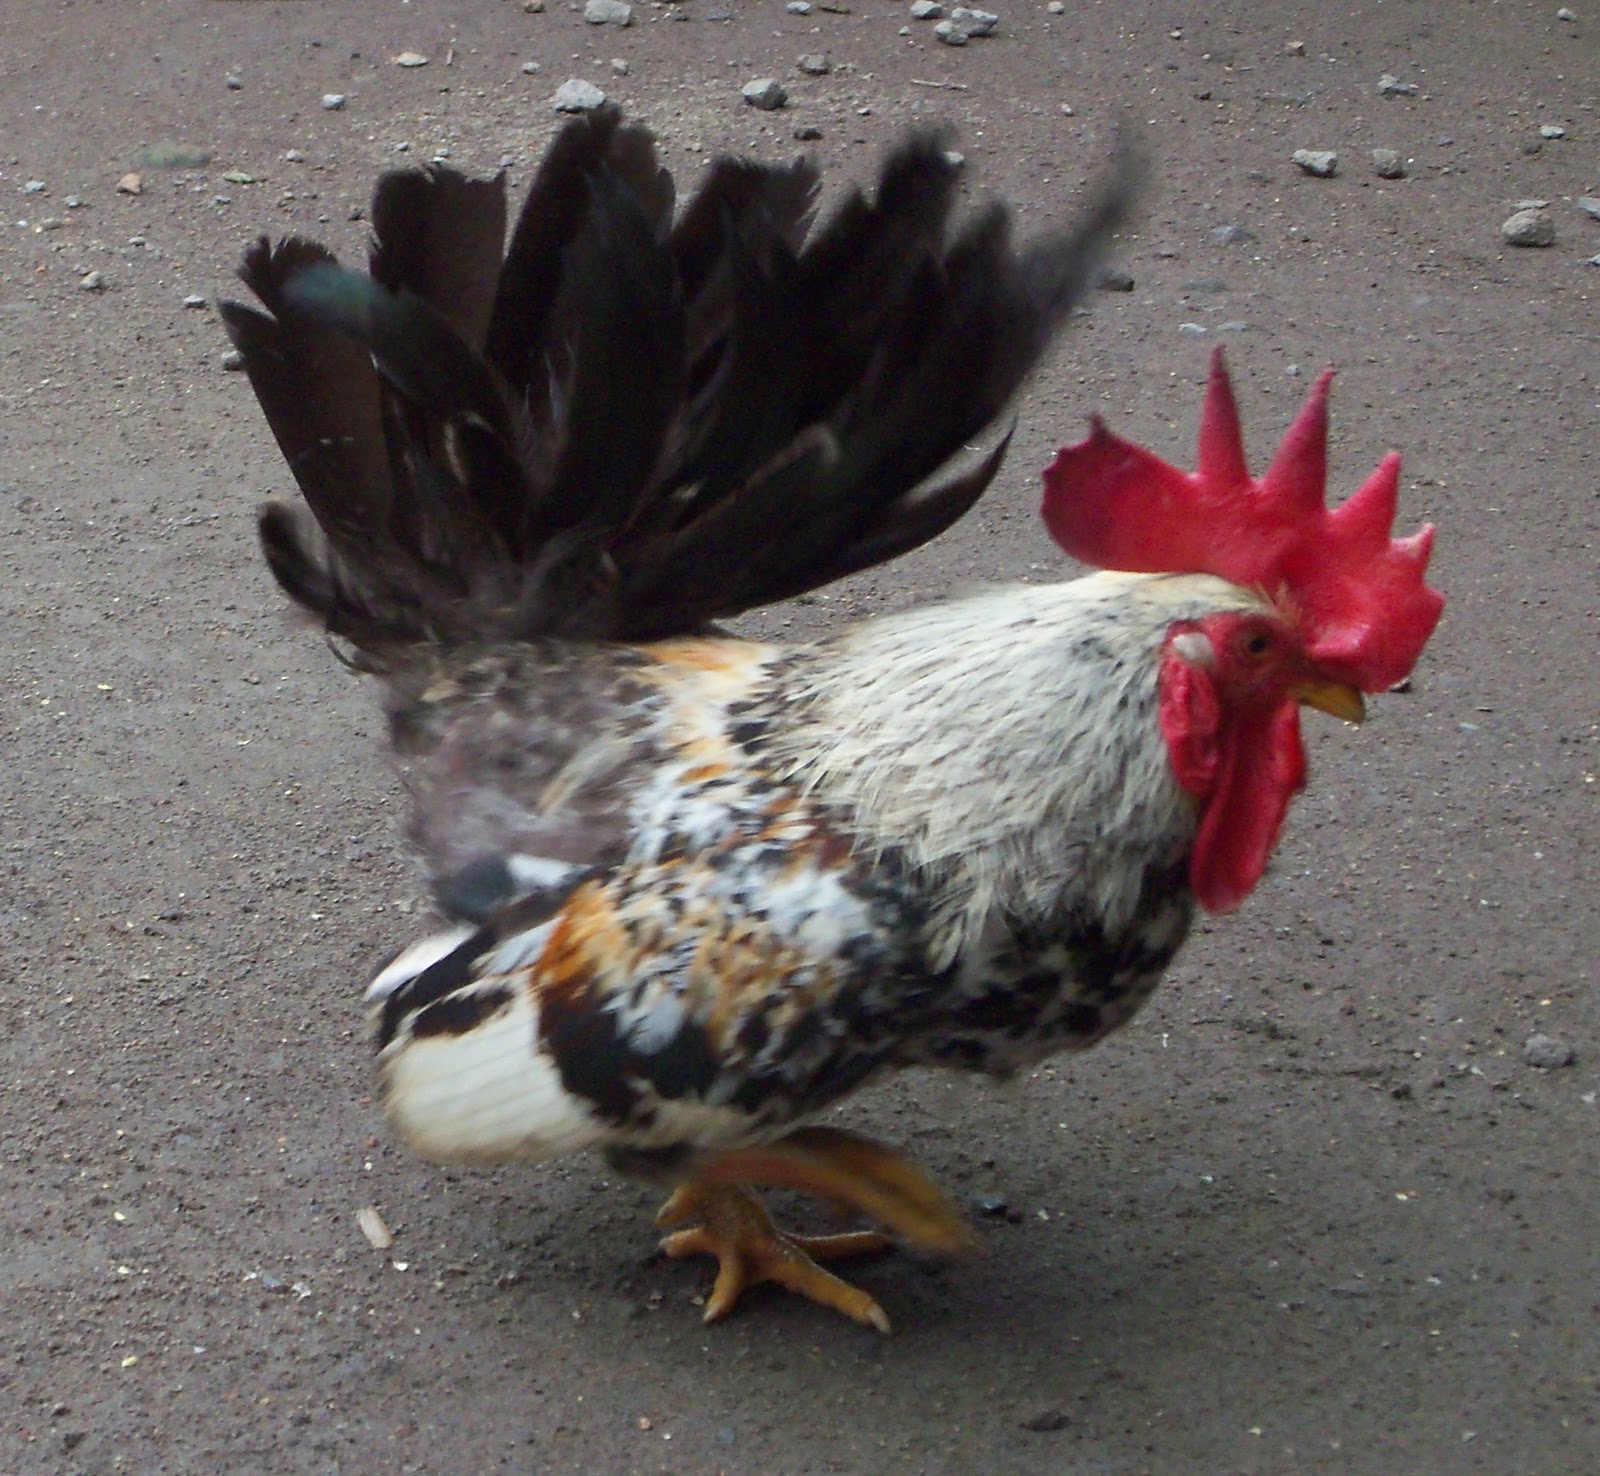  Jenis  Jenis  Ayam  di  Indonesia  KASKUS